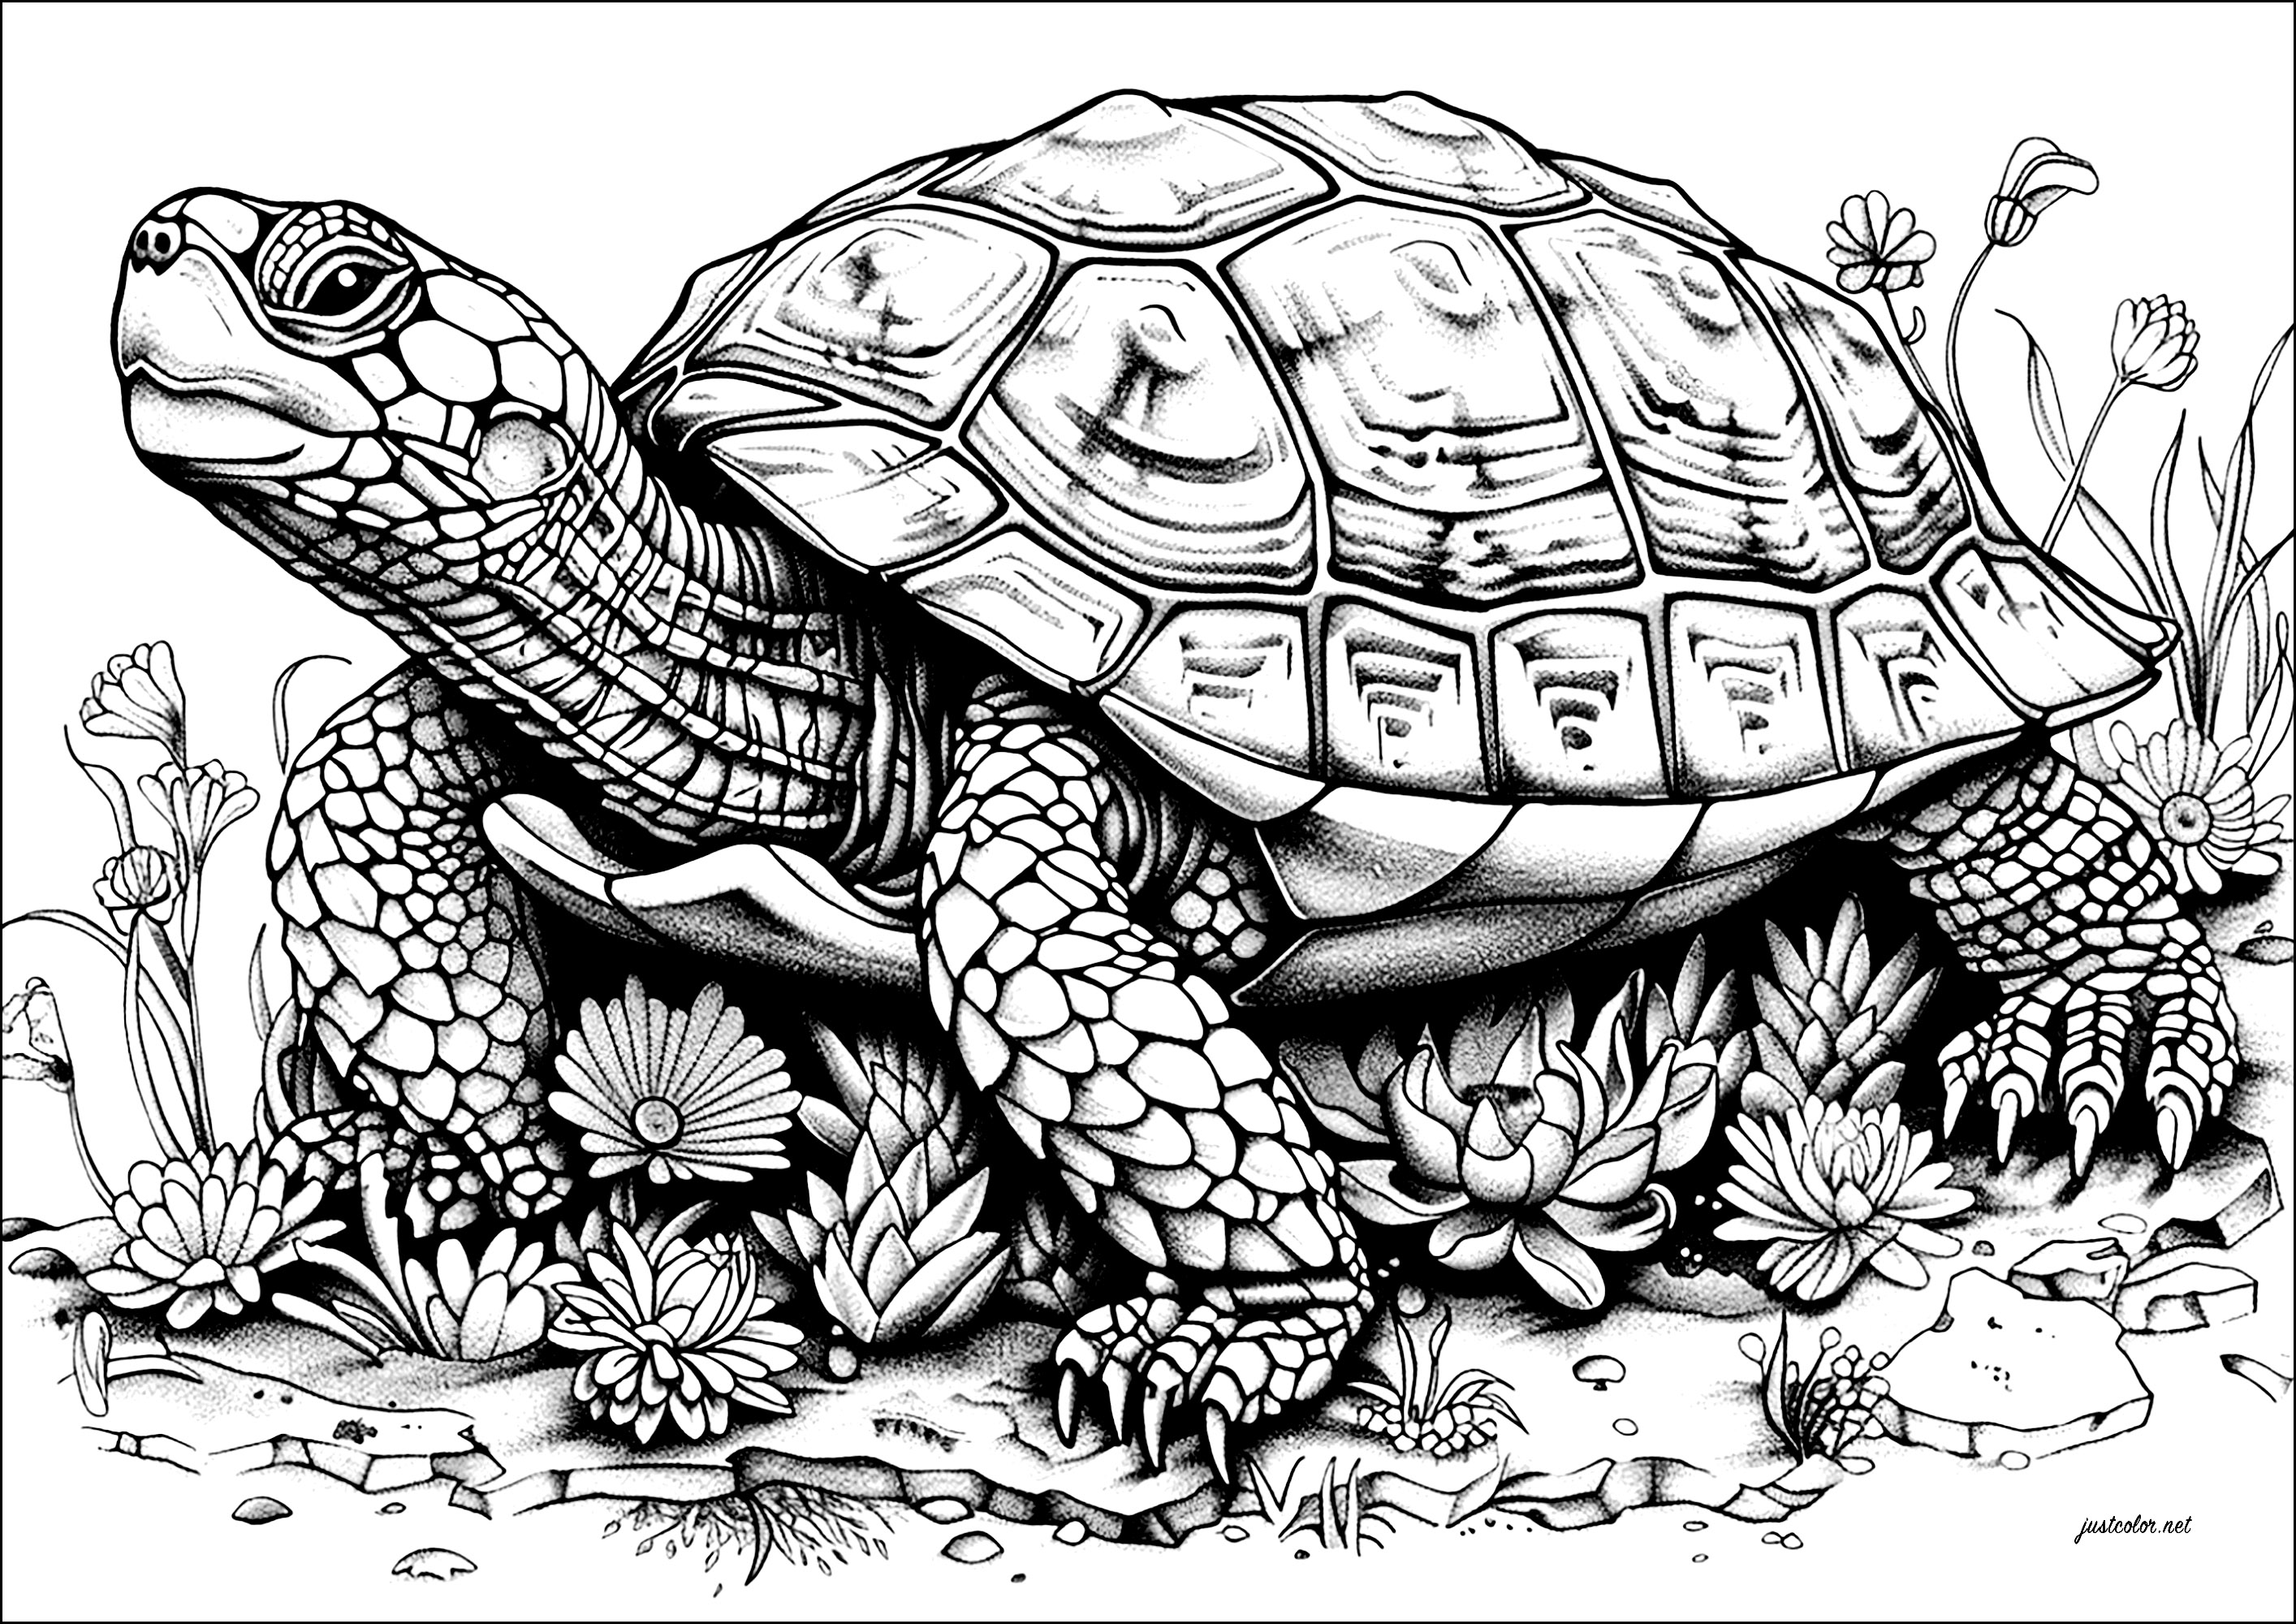 Coloración de una gran tortuga de movimiento lento, llena de detalles. La cabeza de esta tortuga está coronada por un impresionante caparazón, decorado con intrincados dibujos que disfrutarás coloreando.Avanza lentamente, como si llevara el peso del mundo a sus espaldas.